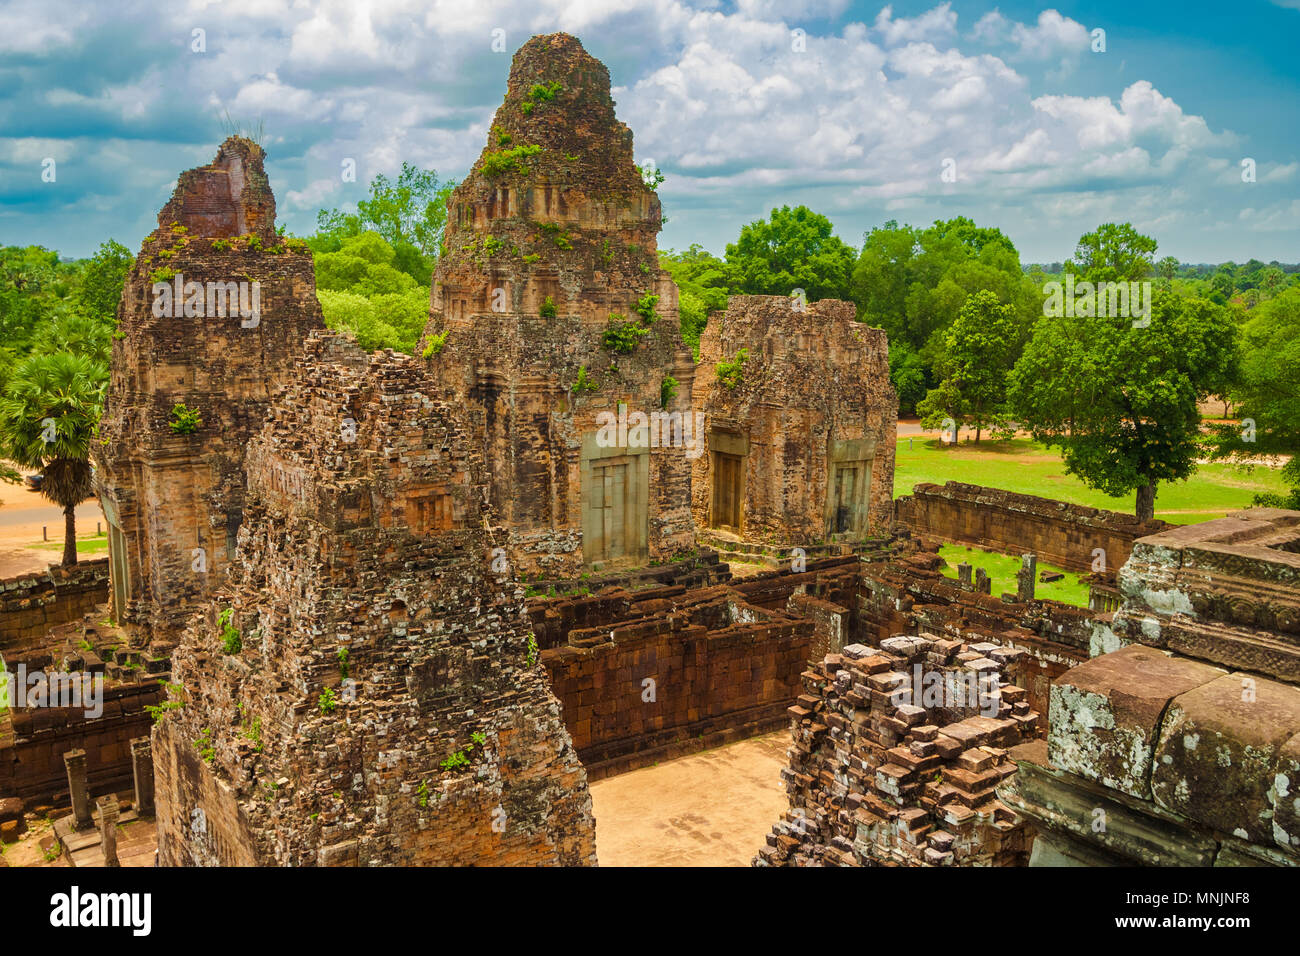 Le sommet de pré Rup's sanctuaire central donne une vue magnifique de sa tour ruines sur le côté est du temple hindou à Angkor, Siem Reap, Cambodge. Banque D'Images